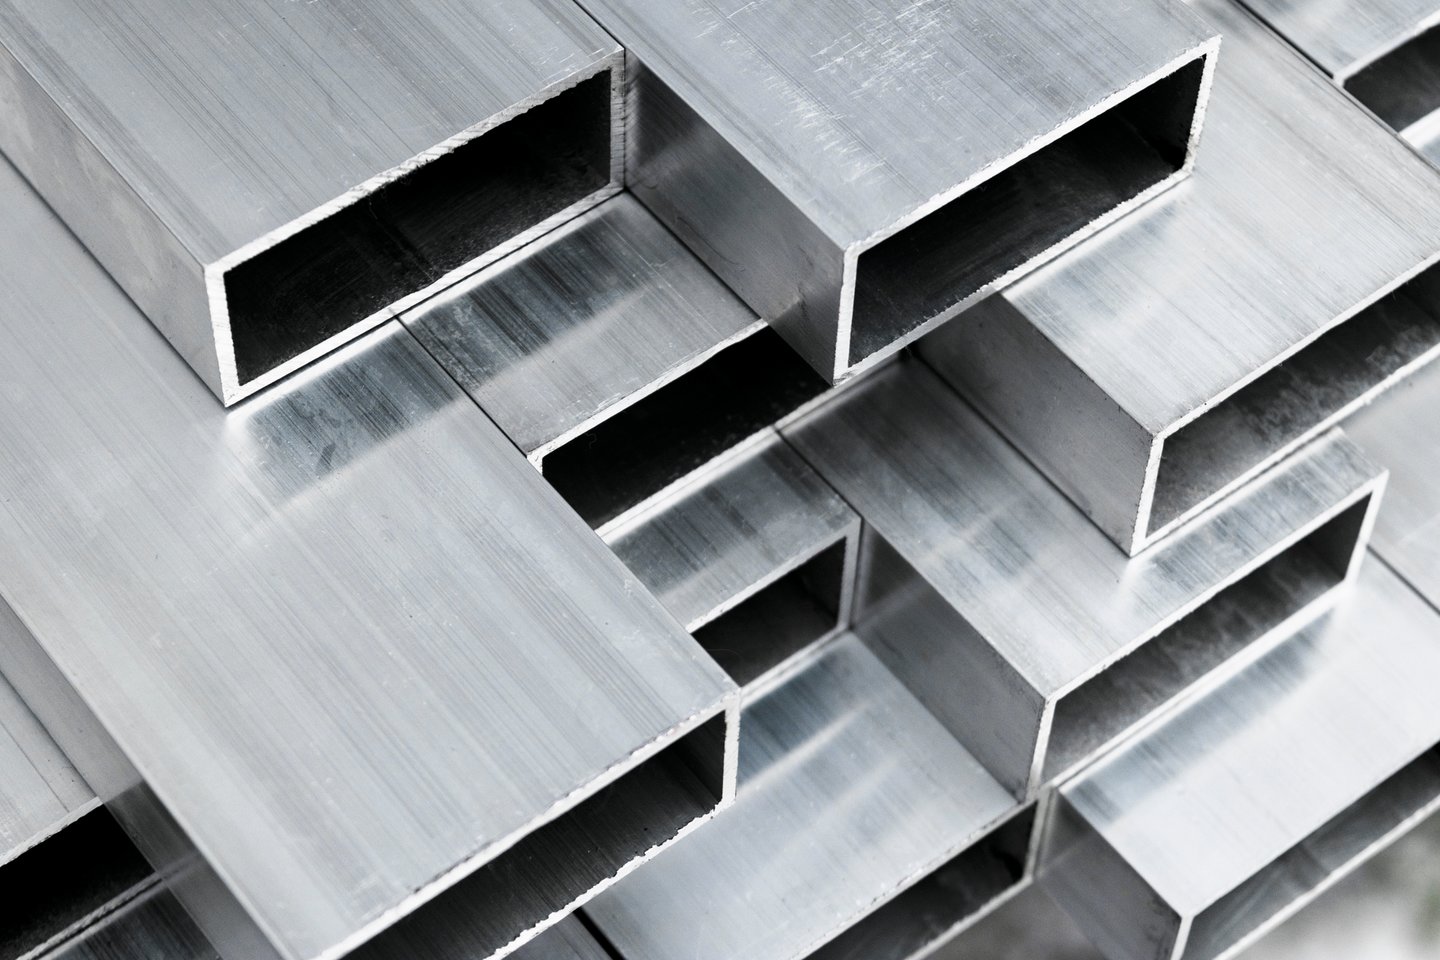  Aliuminis yra labiausiai Žemės plutoje paplitęs metalas, jo yra dvigubai daugiau nei geležies.<br>123rf nuotr.